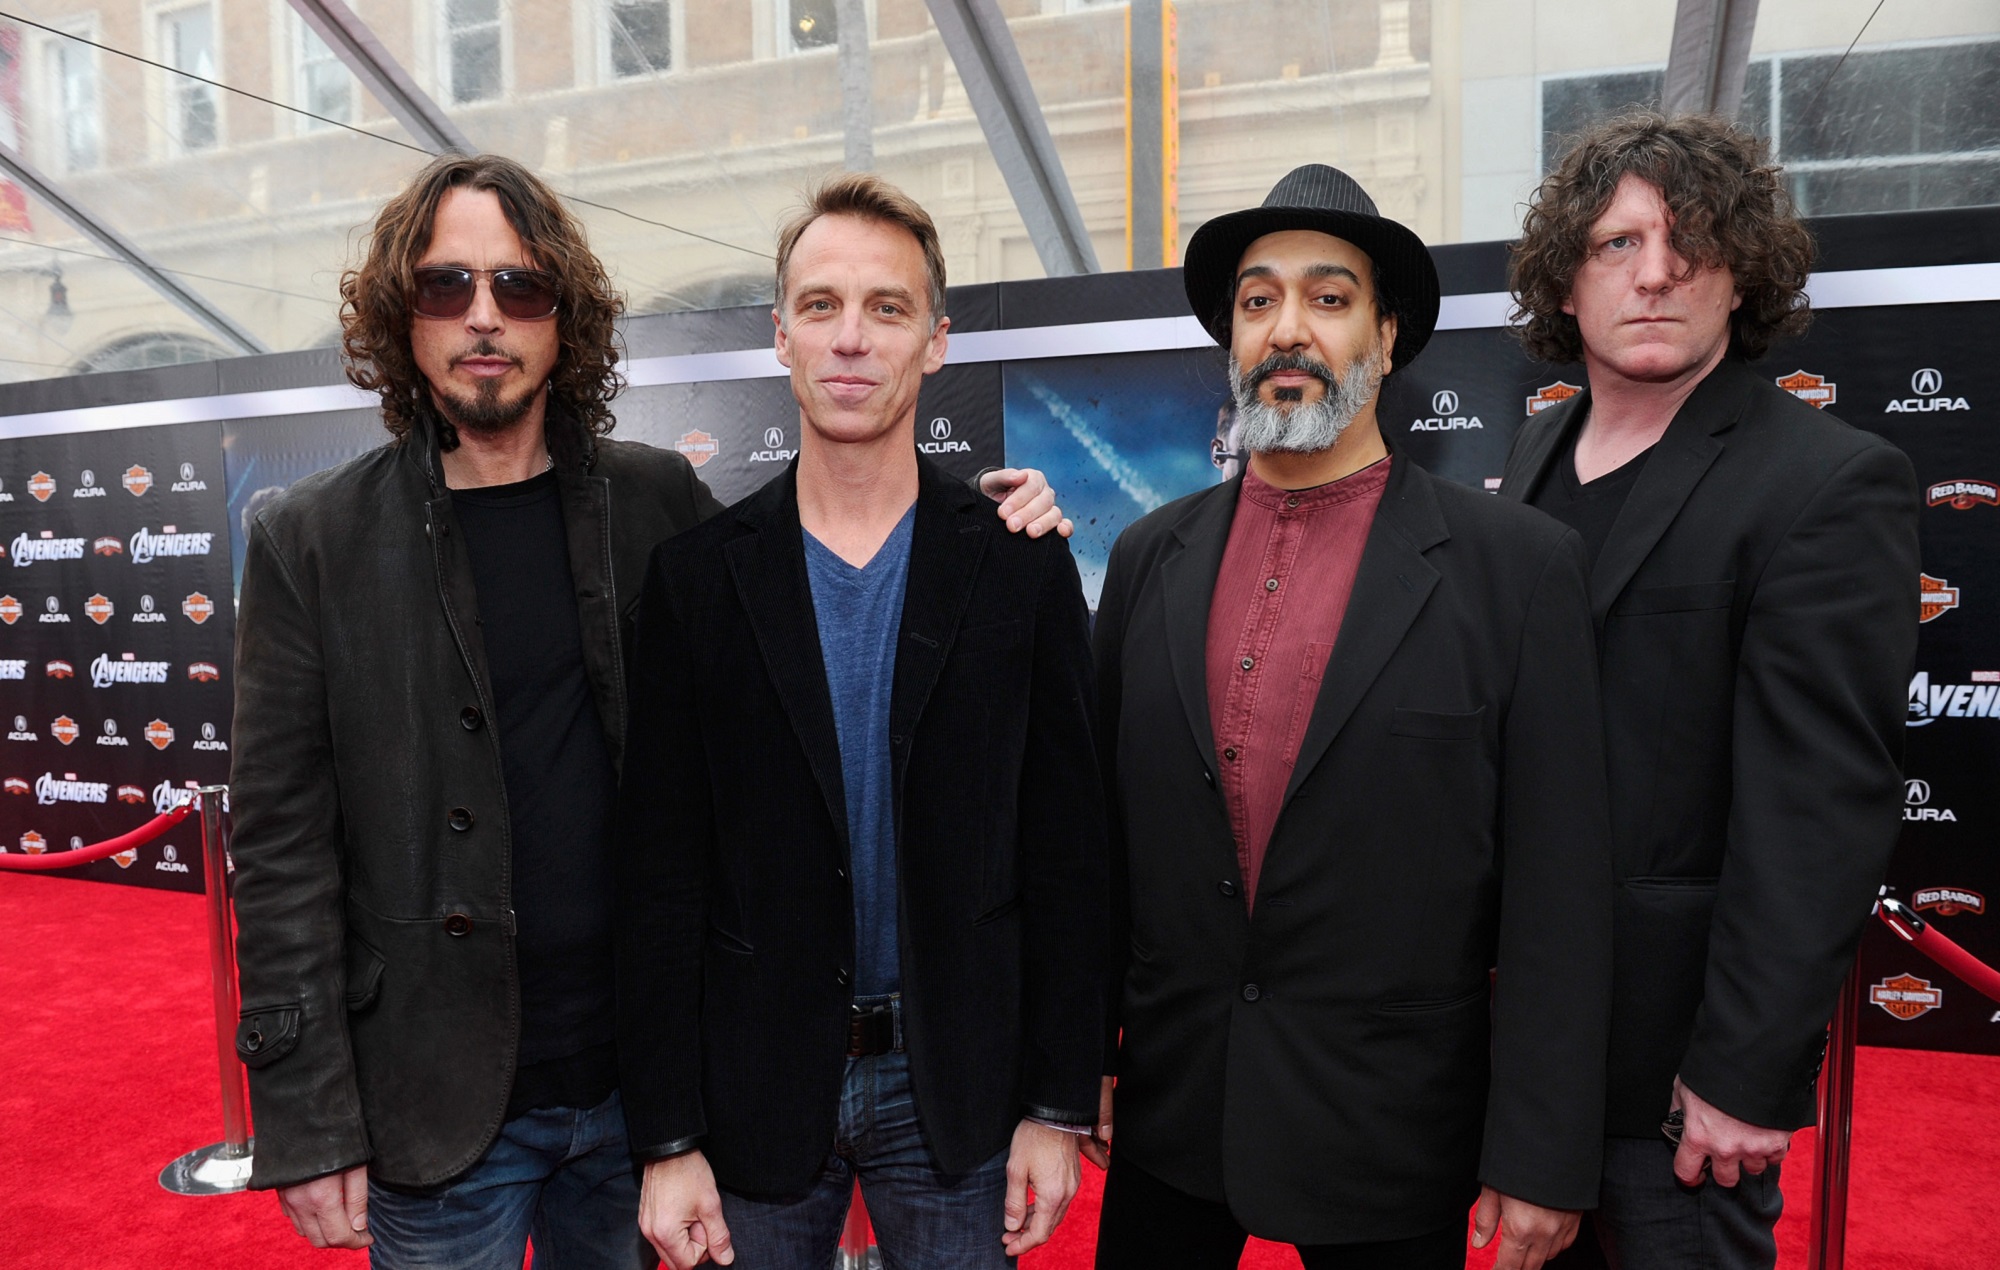 Soundgarden lleva a Vicky Cornell a los tribunales para exigir el acceso a las cuentas de las redes sociales